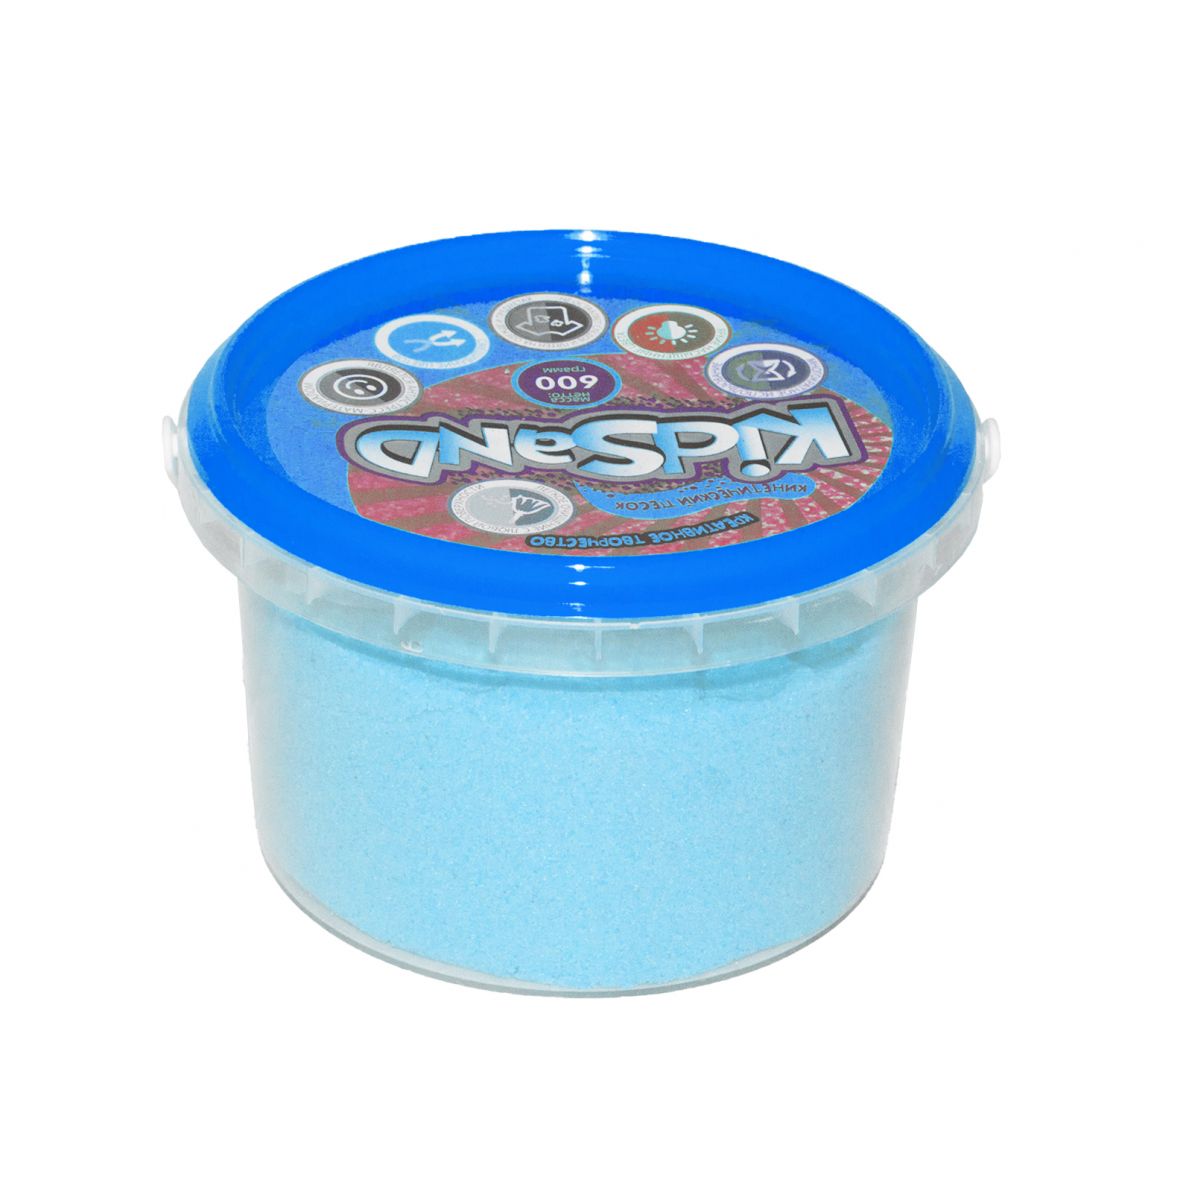 Кинетический песок "KidSand", голубой, 600 г